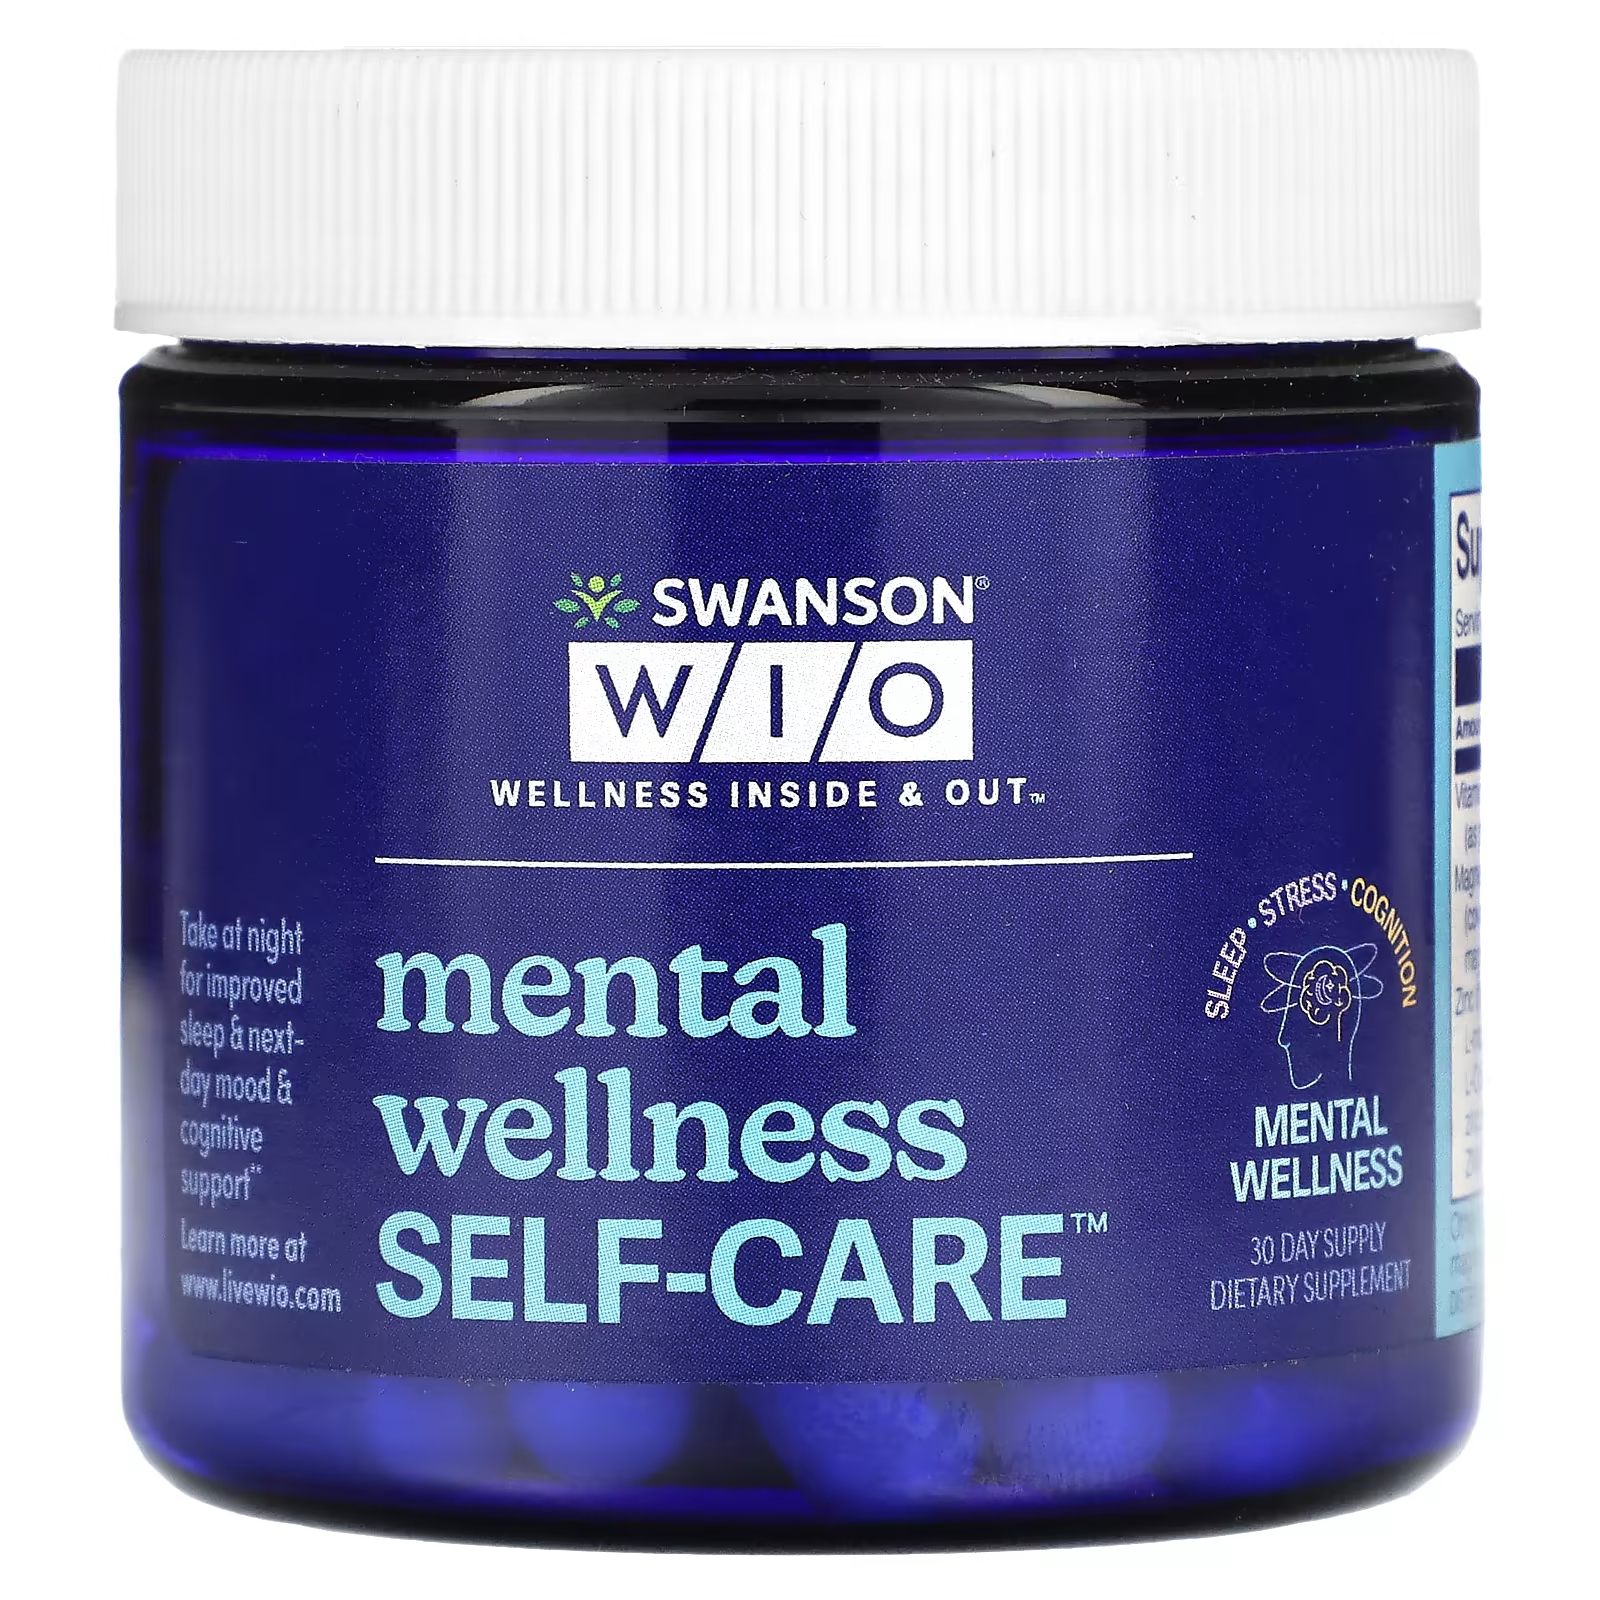 Пищевая добавка Swanson Wio Mental Wellness Self-Care, 30 капсул гейтс мариам йога вечером для хорошего сна